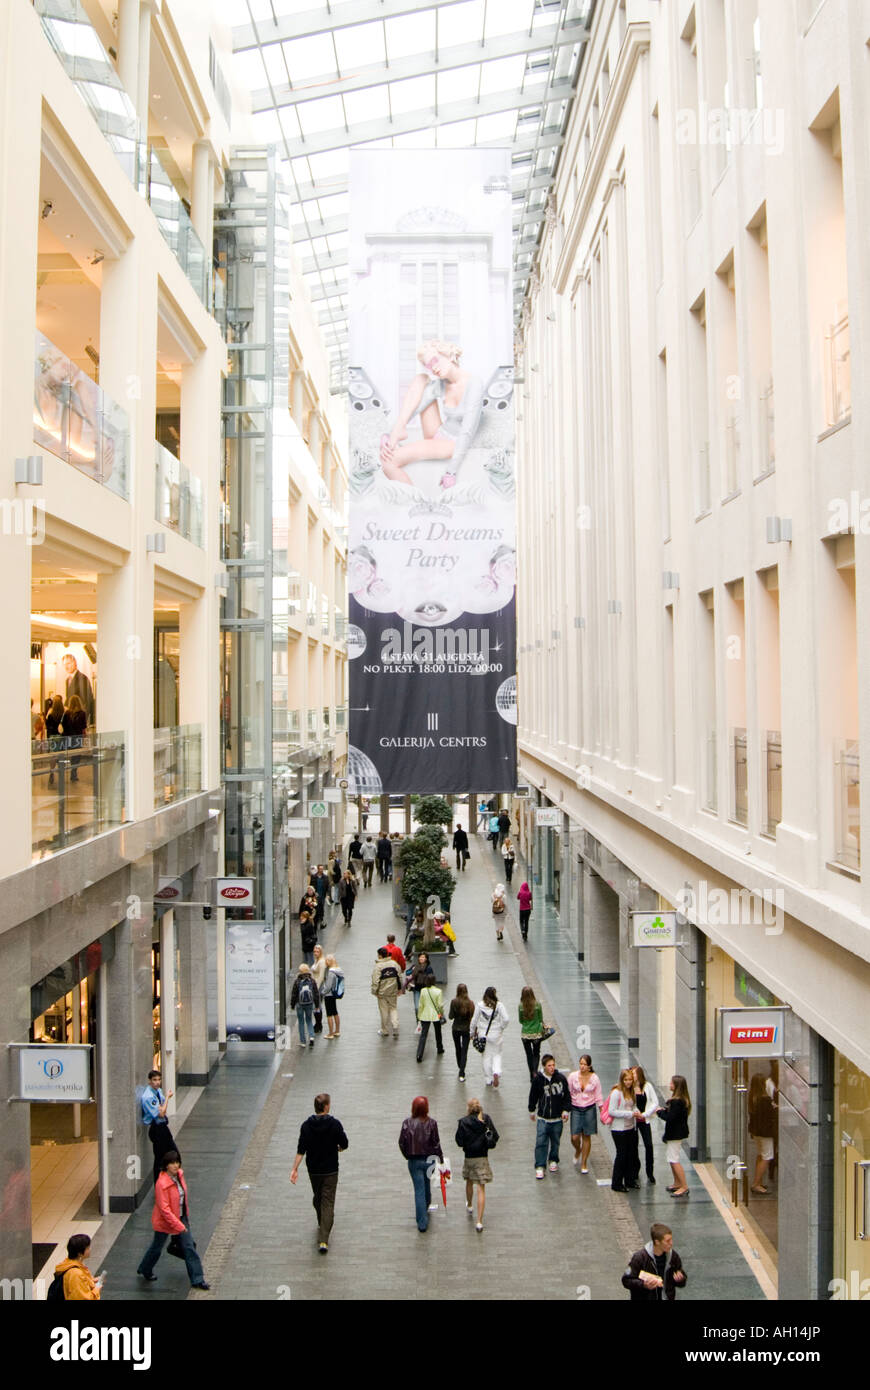 Galerija Centrs shopping mall in Riga Latvia Stock Photo